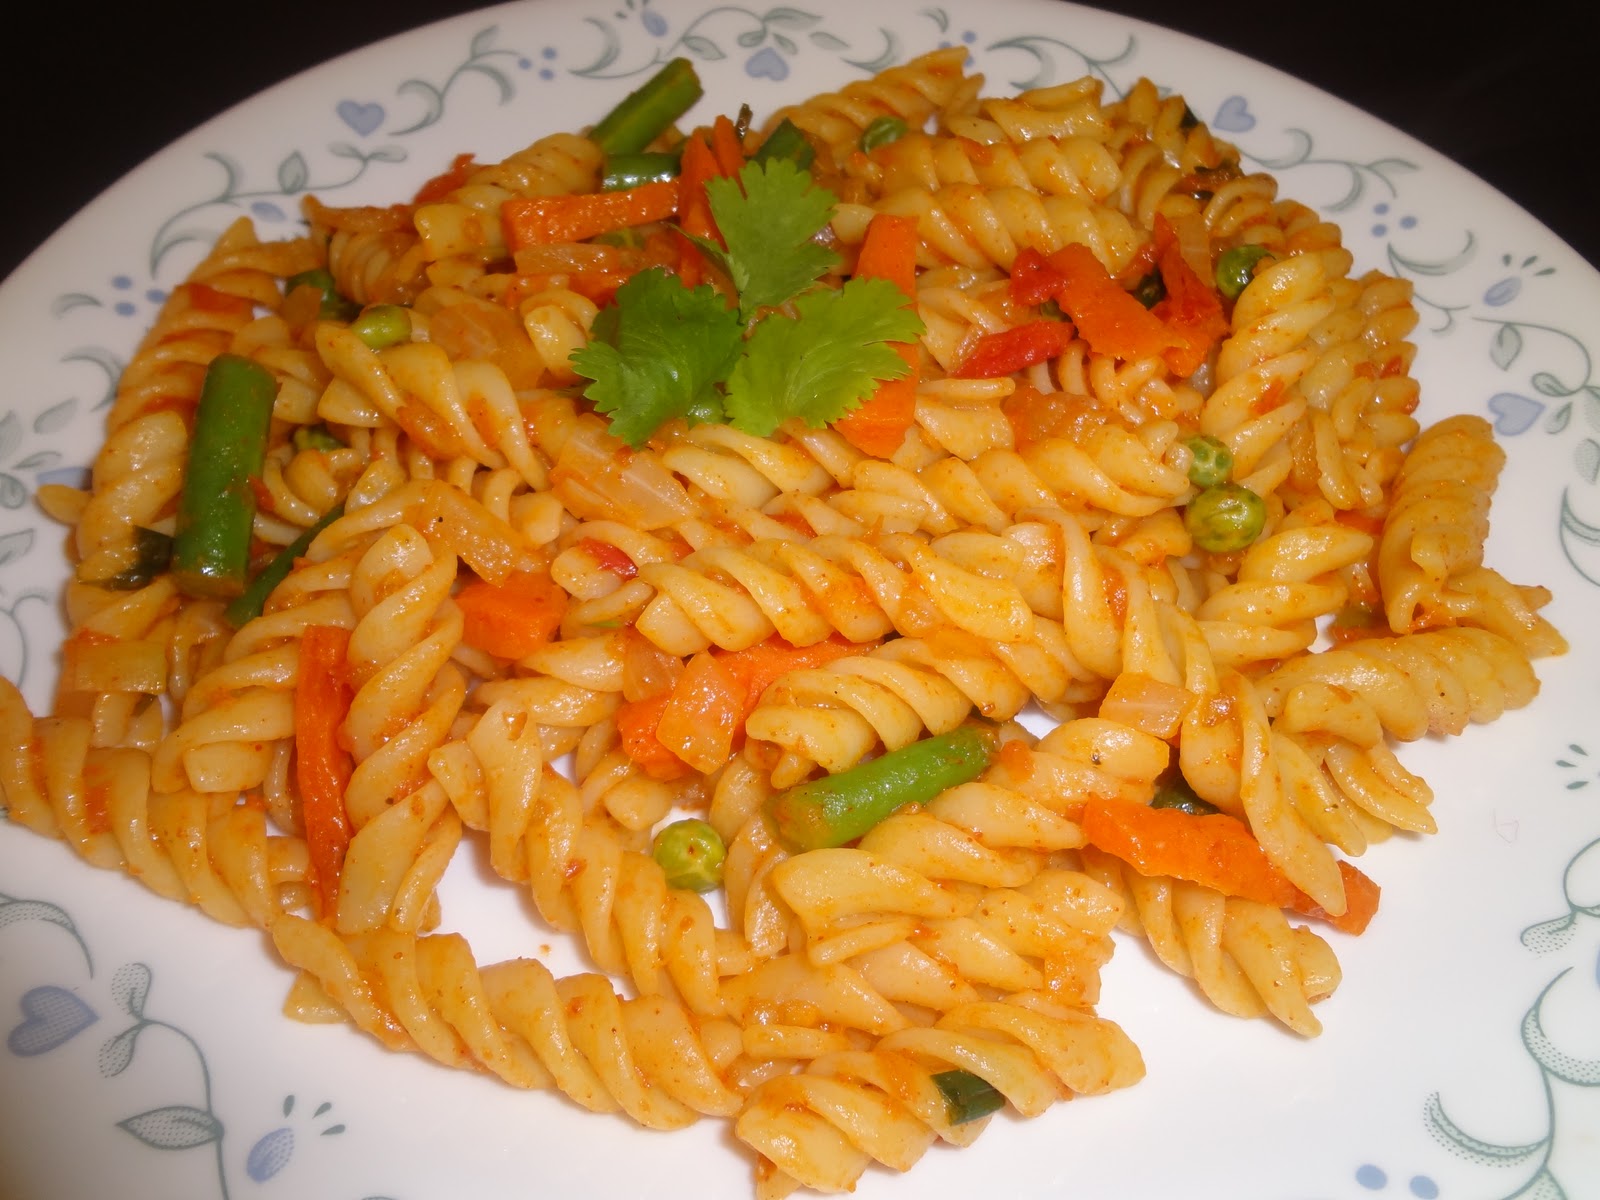 Achusmenu- Indian Vegetarian Cooking: Indian Vegetable Pasta